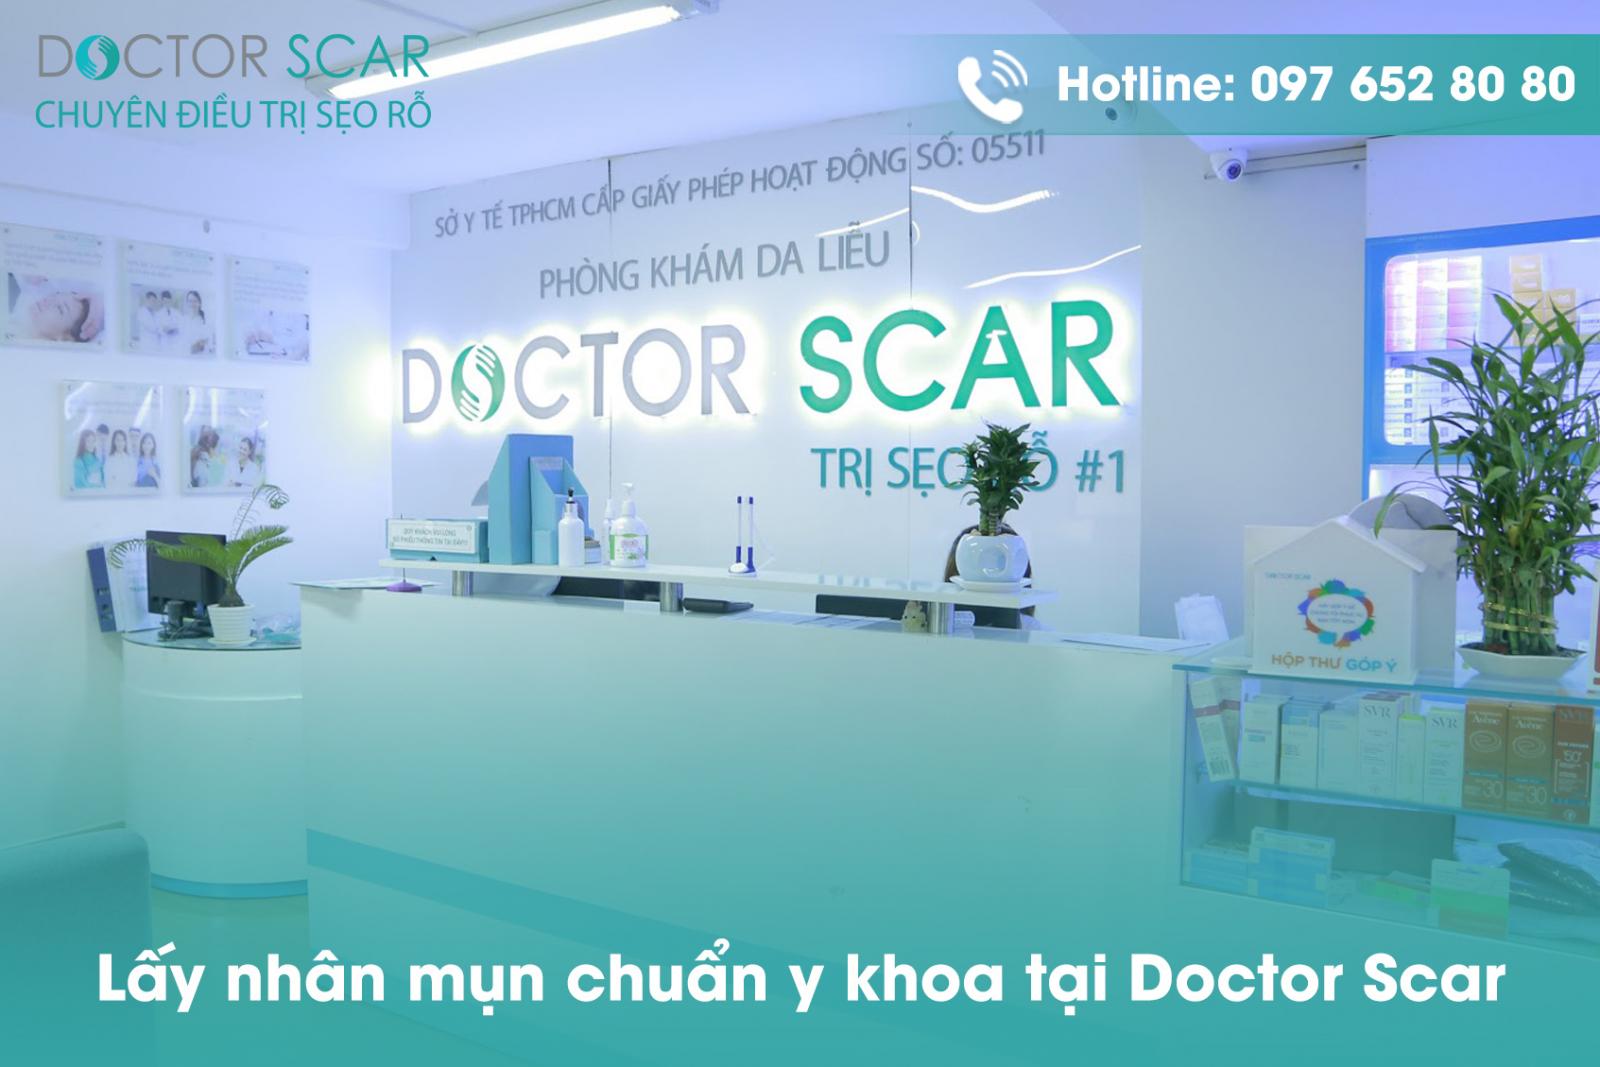 Lấy nhân mụn chuẩn y khoa tại Doctor Scar